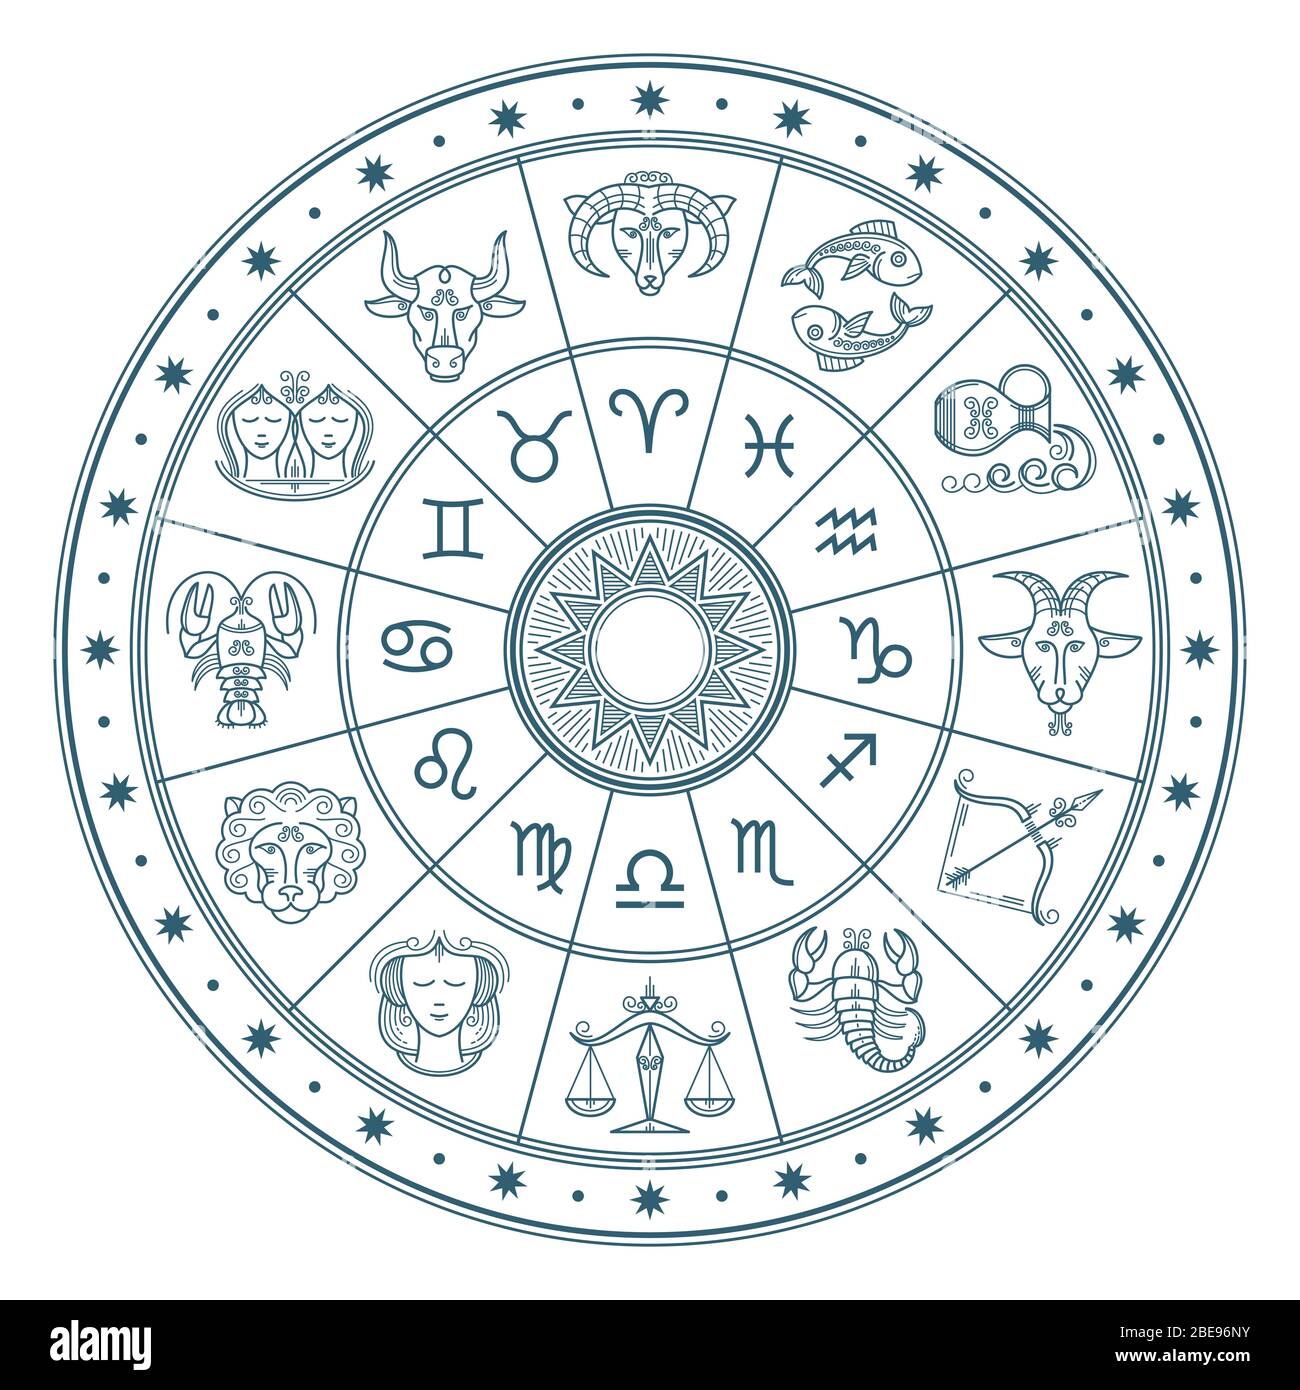 Astrologie Horoskop Kreis mit Tierkreiszeichen Vektor Hintergrund. Form Symbol Horoskop Kalender, Sammlung zodiakalen Tiere Illustration Stock Vektor